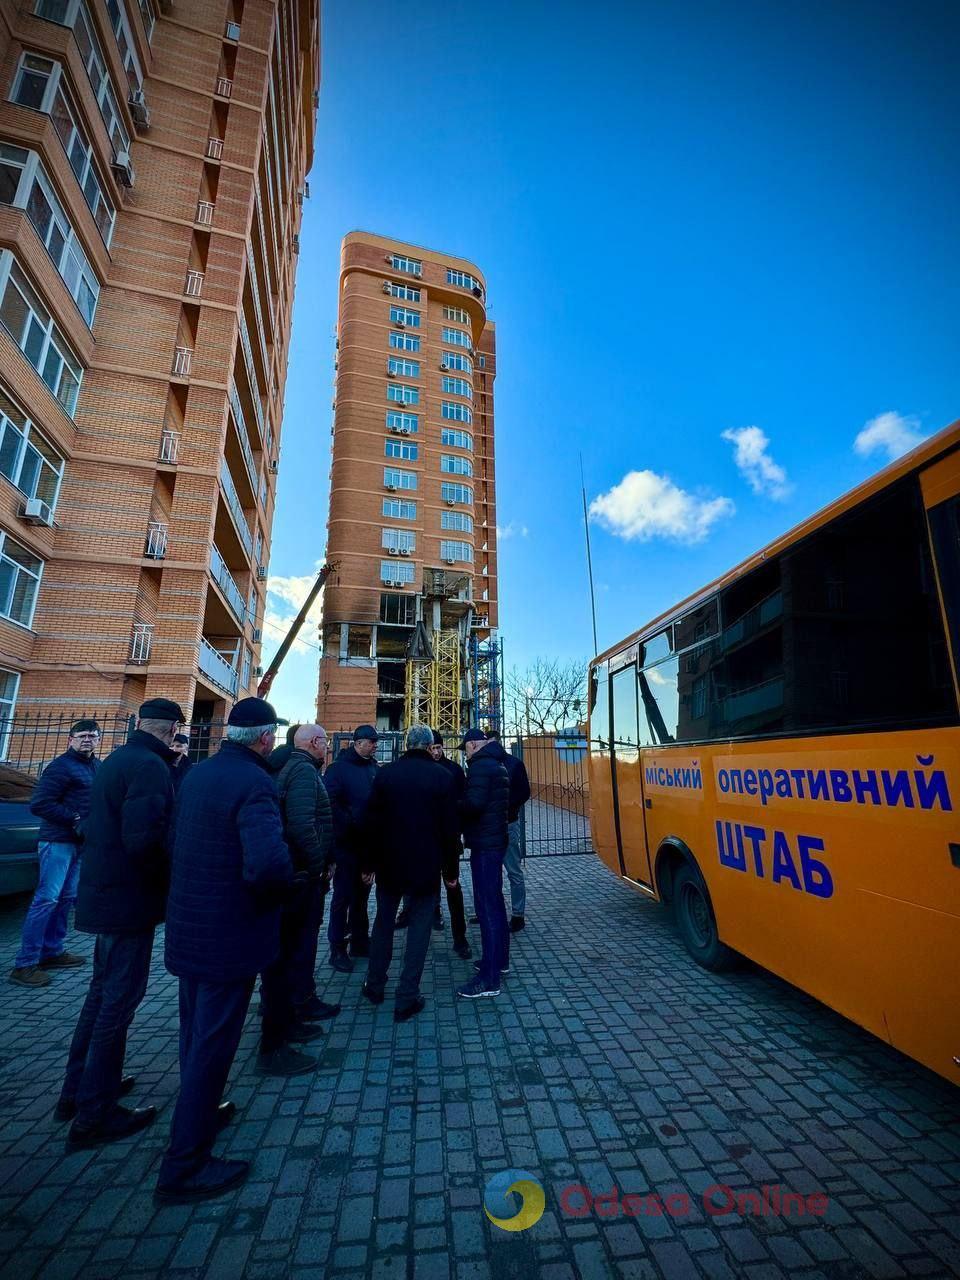 Одесса: на восстановление поврежденной ракетой многоэтажки на Средней требуется около 10 месяцев